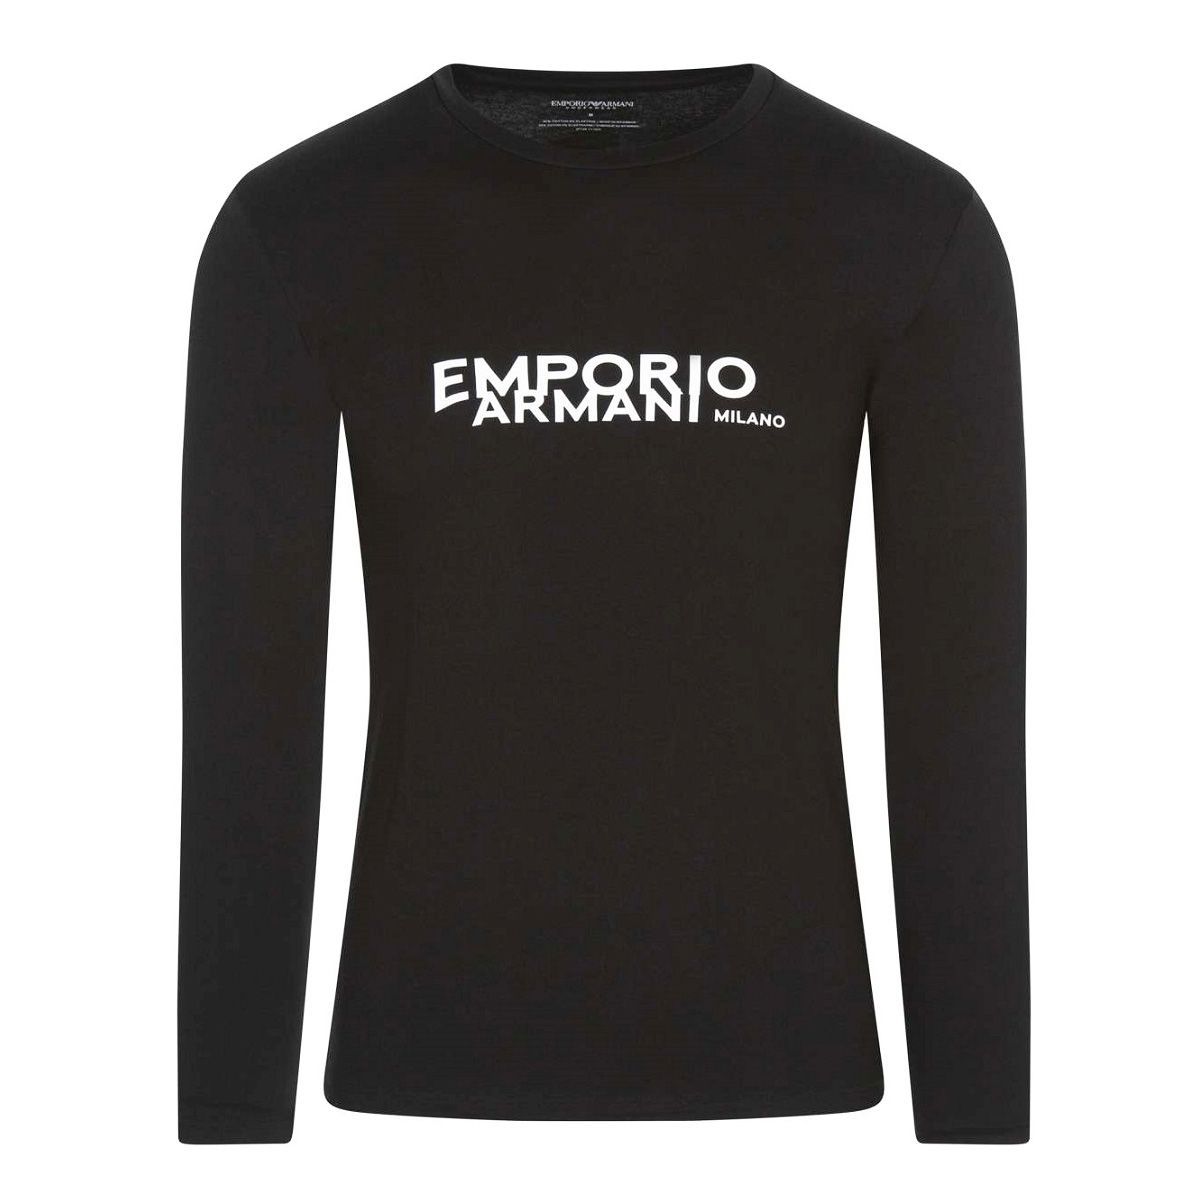 48 EMPORIO ARMANI エンポリオアルマーニ 111023 2F725 ブラック Tシャツ 長袖 ロゴ - メルカリ